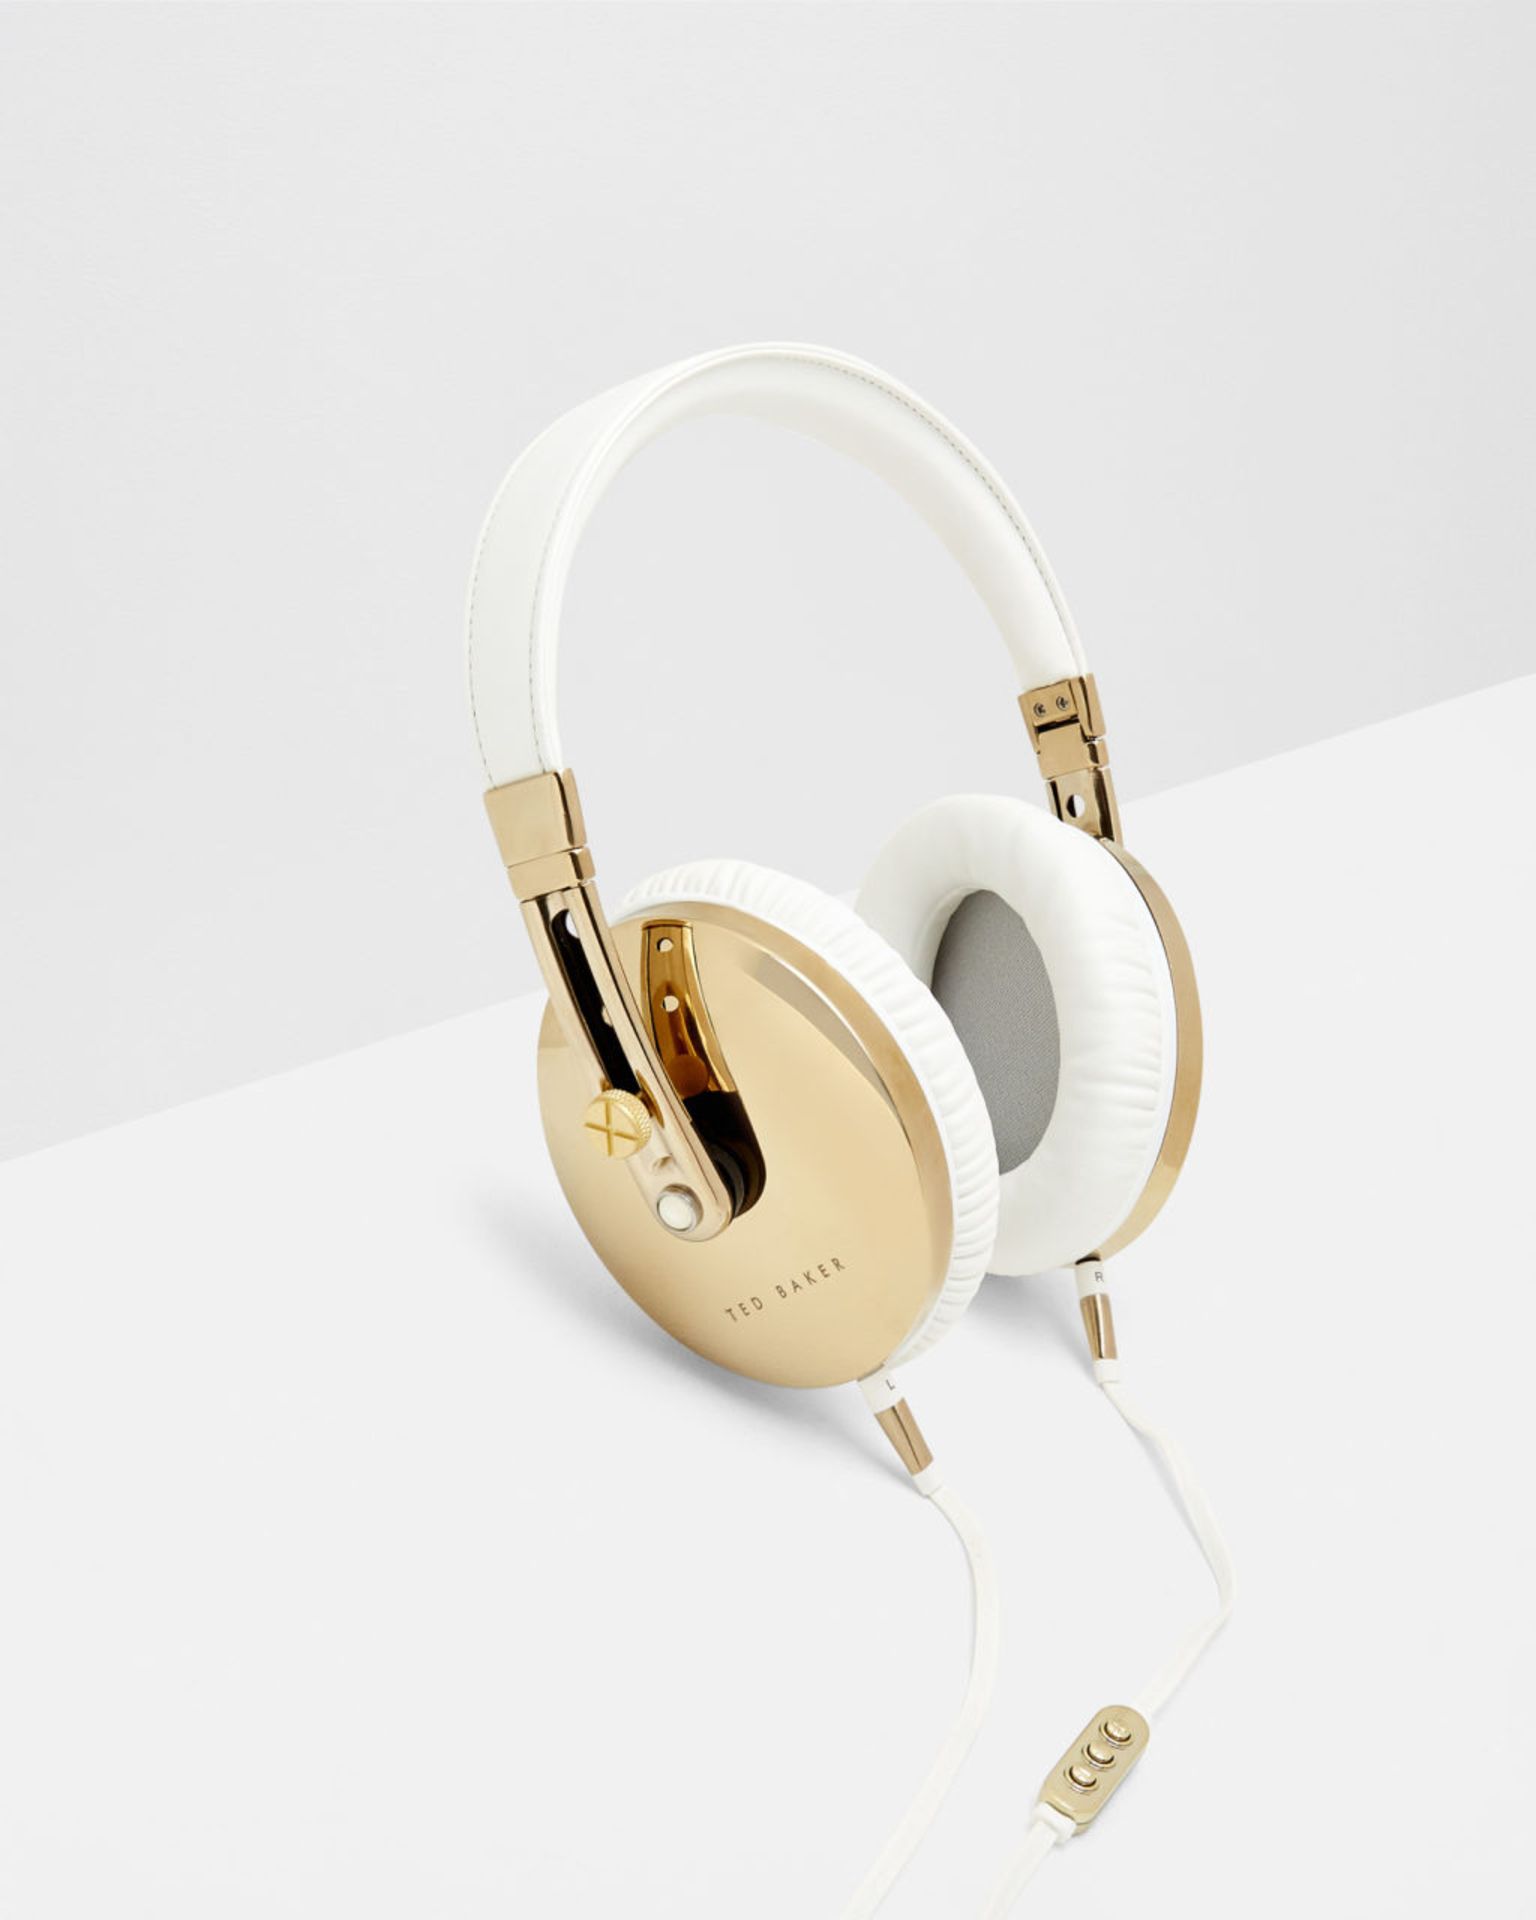 V Brand New Ted Baker Rockall High Performance Folding Over Ear Headphones White/Gold Apple